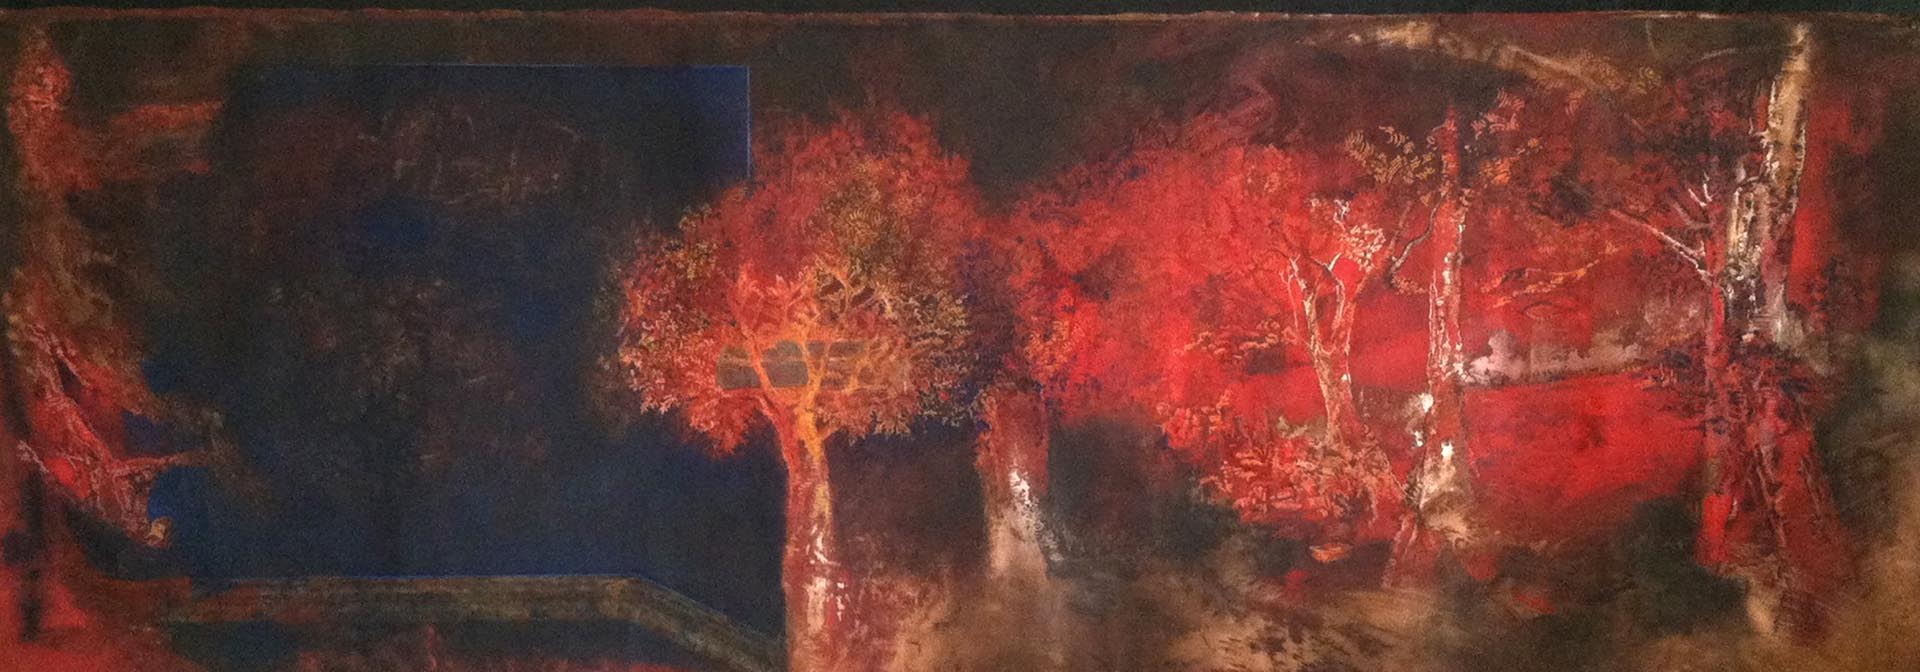 Ellen Wiener, Red Trees, 16 x 60”, oil on copper, 2014